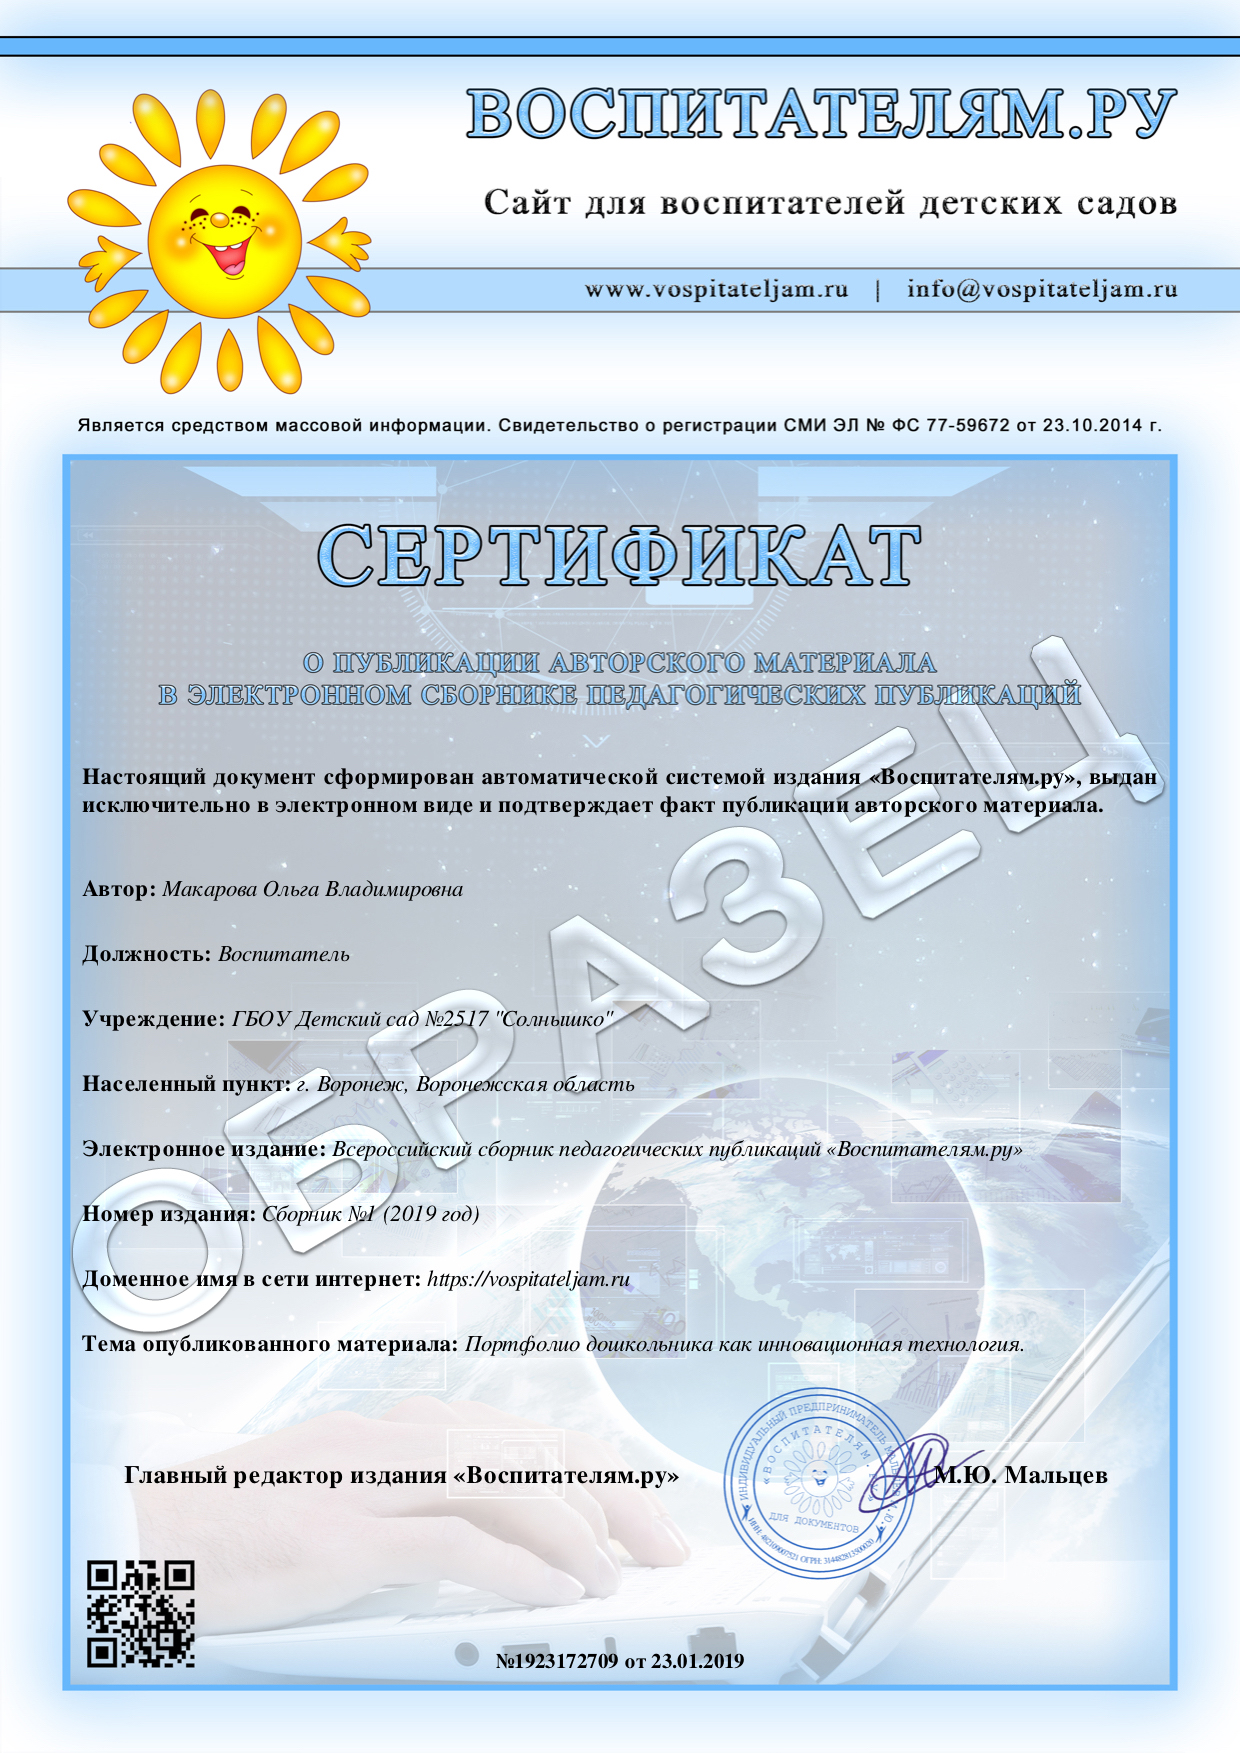 Сертификат. Публикация авторского материала в электронном журнале.